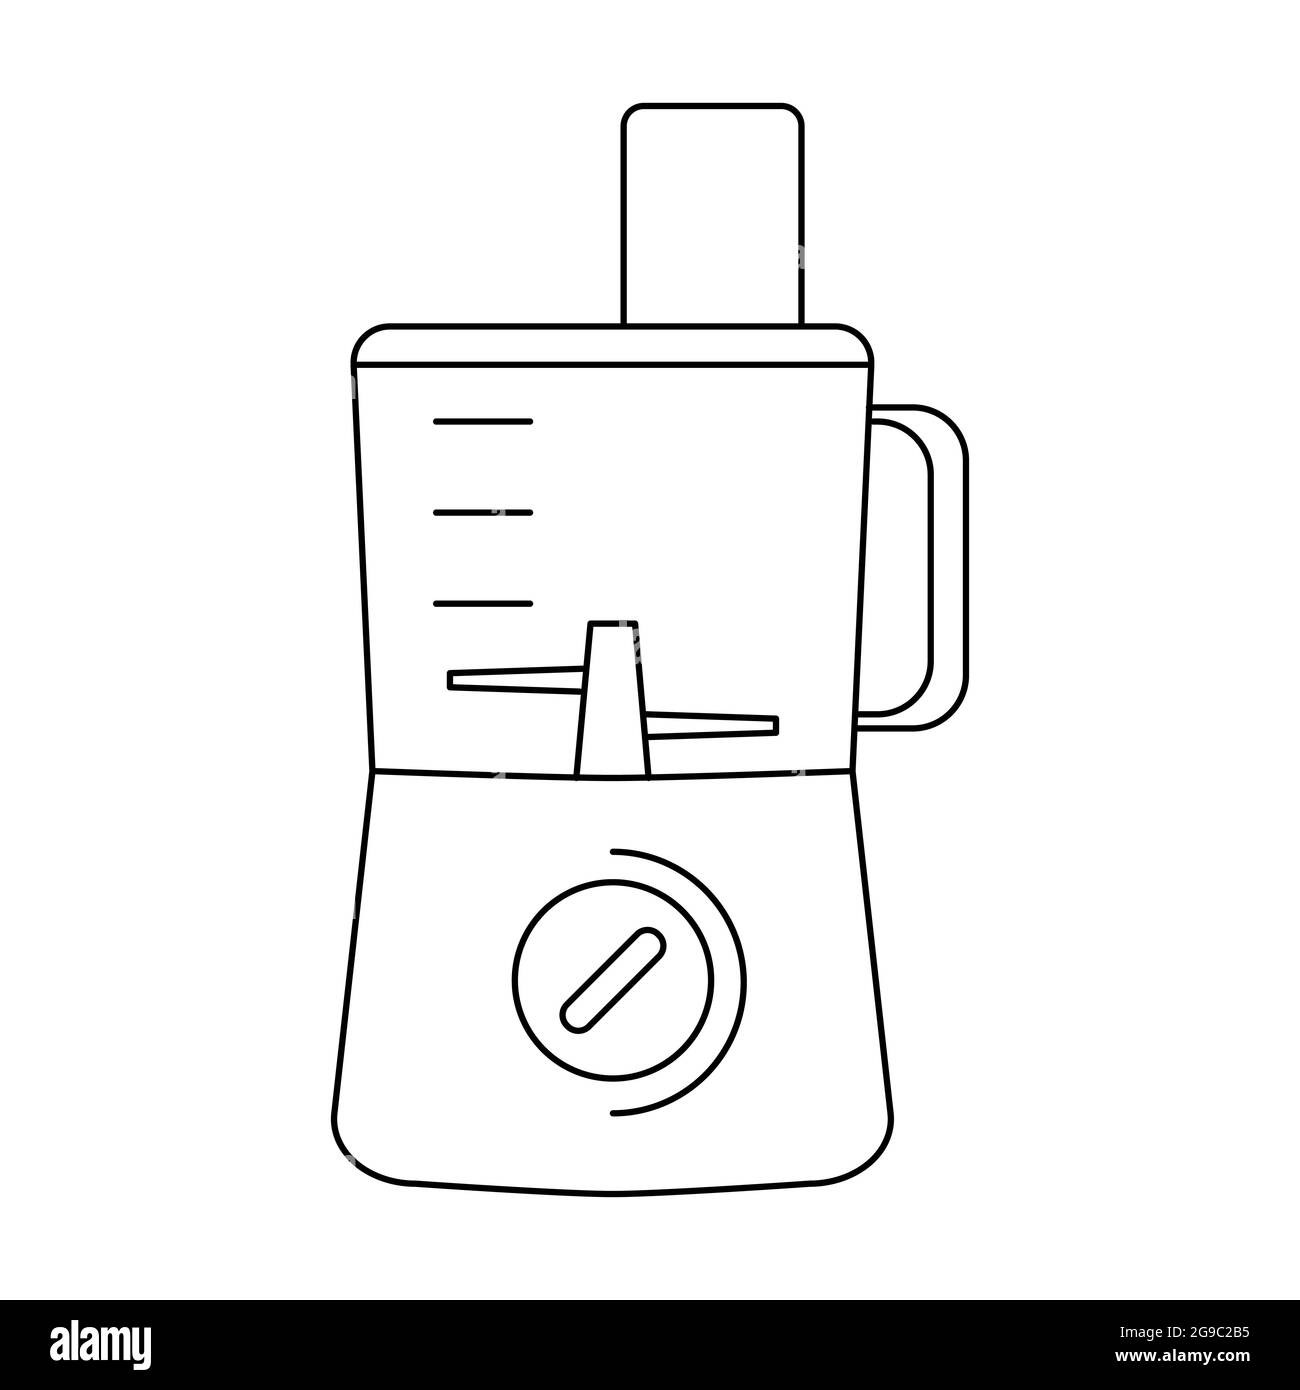 Icona del profilo del robot da cucina. Simbolo del frullatore a linee sottili isolato su sfondo bianco. Illustrazione vettoriale per il web design. Piccolo apparecchio per cucina e. Illustrazione Vettoriale